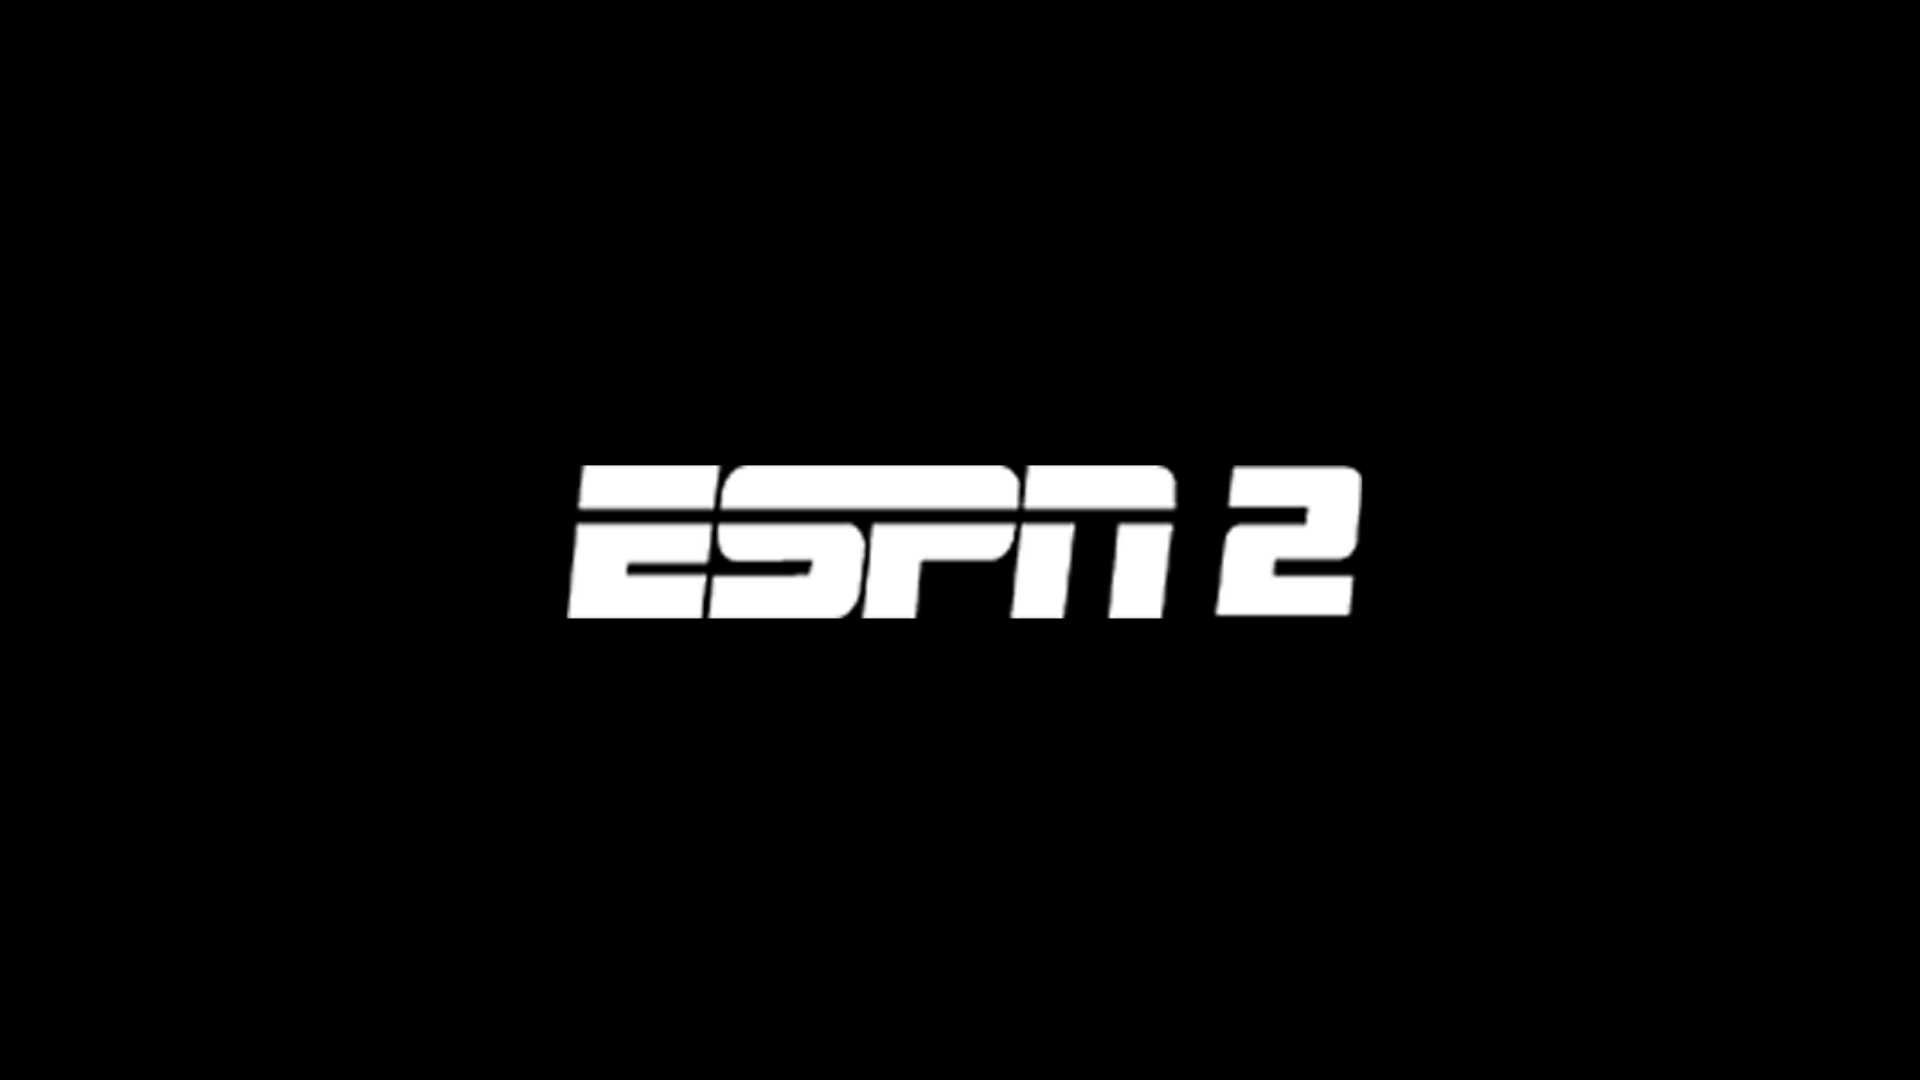 ESPN 2 ao vivo,ESPN 2 online,assistir ESPN 2,assistir ESPN 2 ao vivo,assistir ESPN 2 online,ESPN 2 gratis,assistir ESPN 2 gratis,ao vivo online,ao vivo gratis,ver ESPN 2,ver ESPN 2 ao vivo,ver ESPN 2 online,24 horas,24h,multicanais,piratetv,piratatvs.com